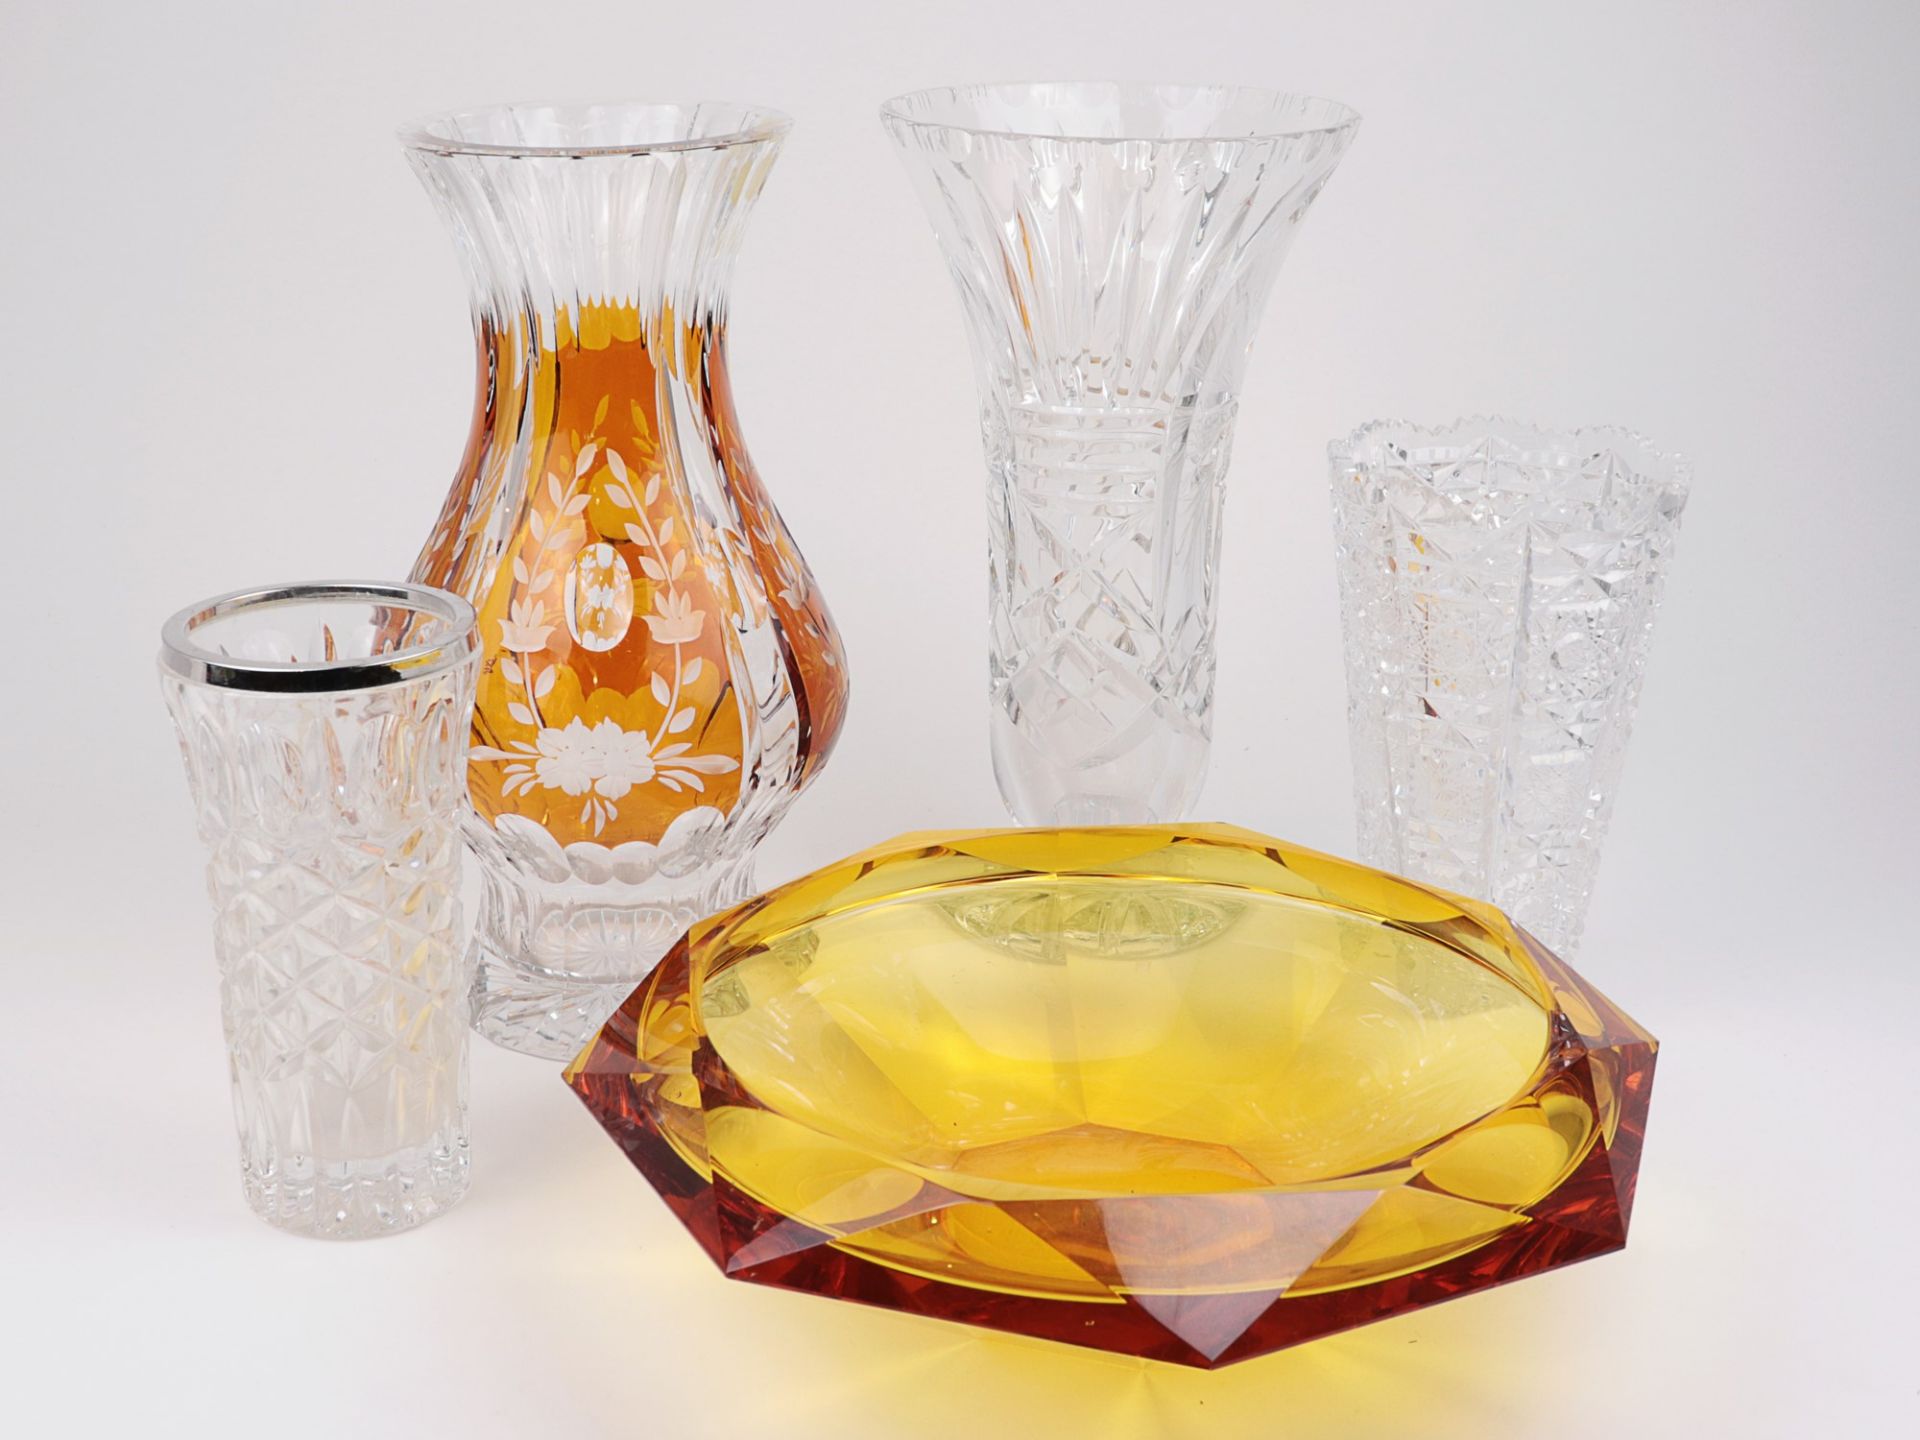 Konvolut 5 St., Vasen u. Schale, untersch. Formen u. Größen, farbloses u. bernsteinfarbenes Glas,1x